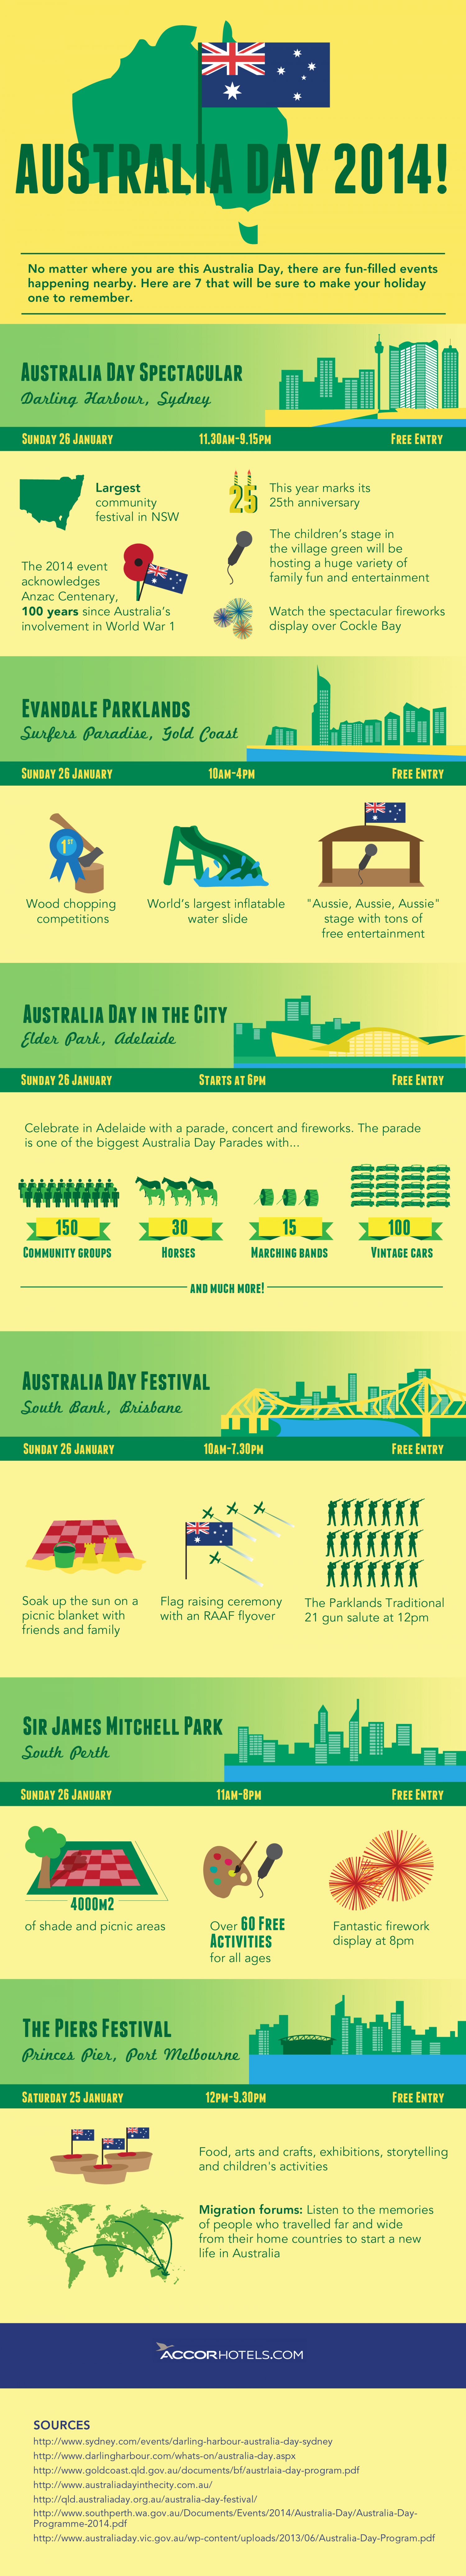 Australia Day 2014 Activities Infographic